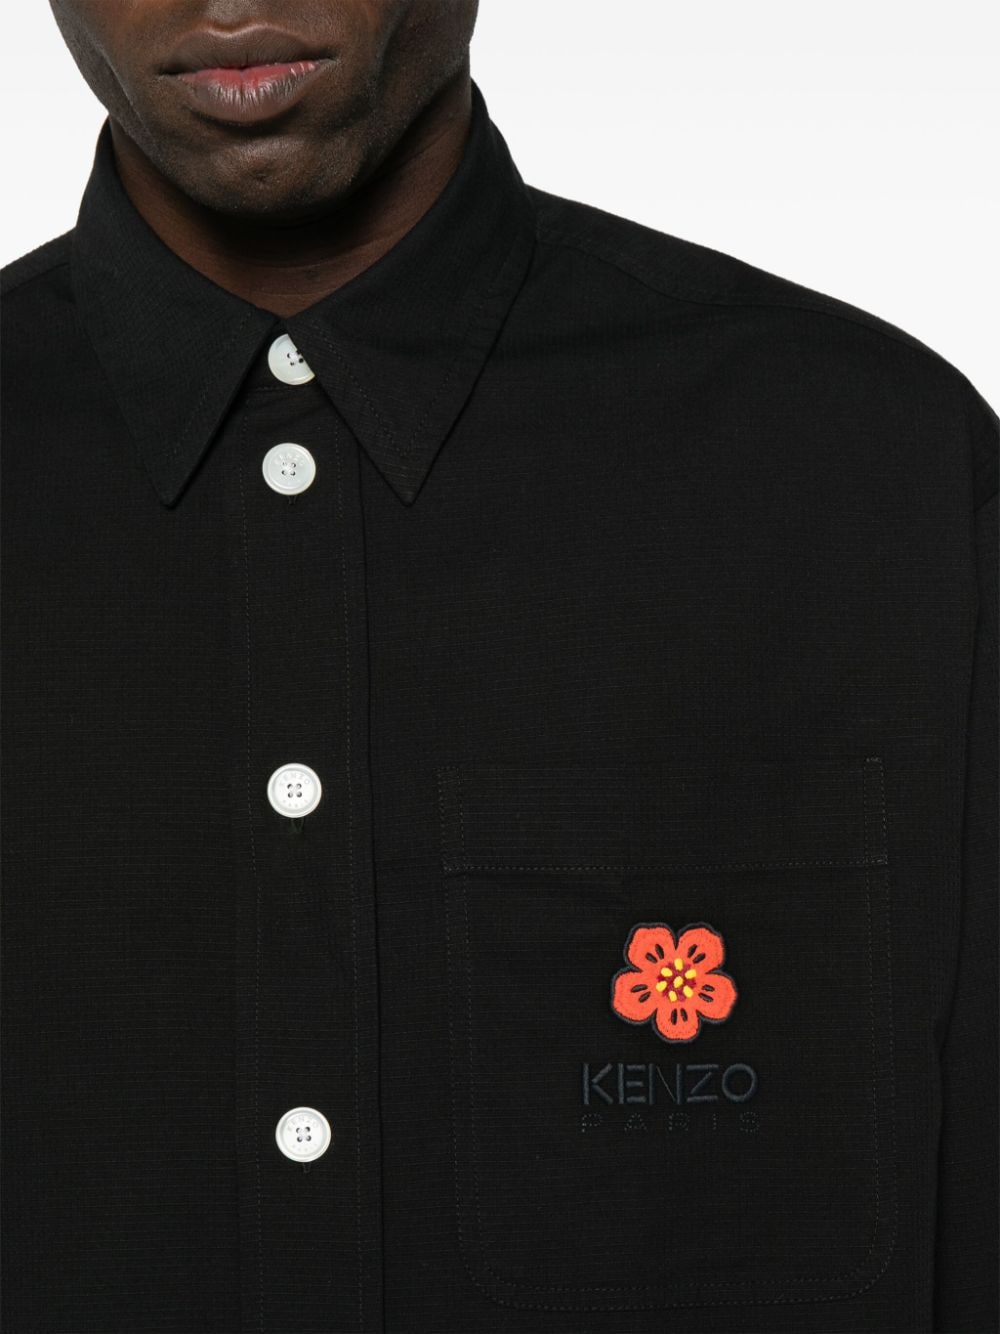 Kenzo Shirts Black